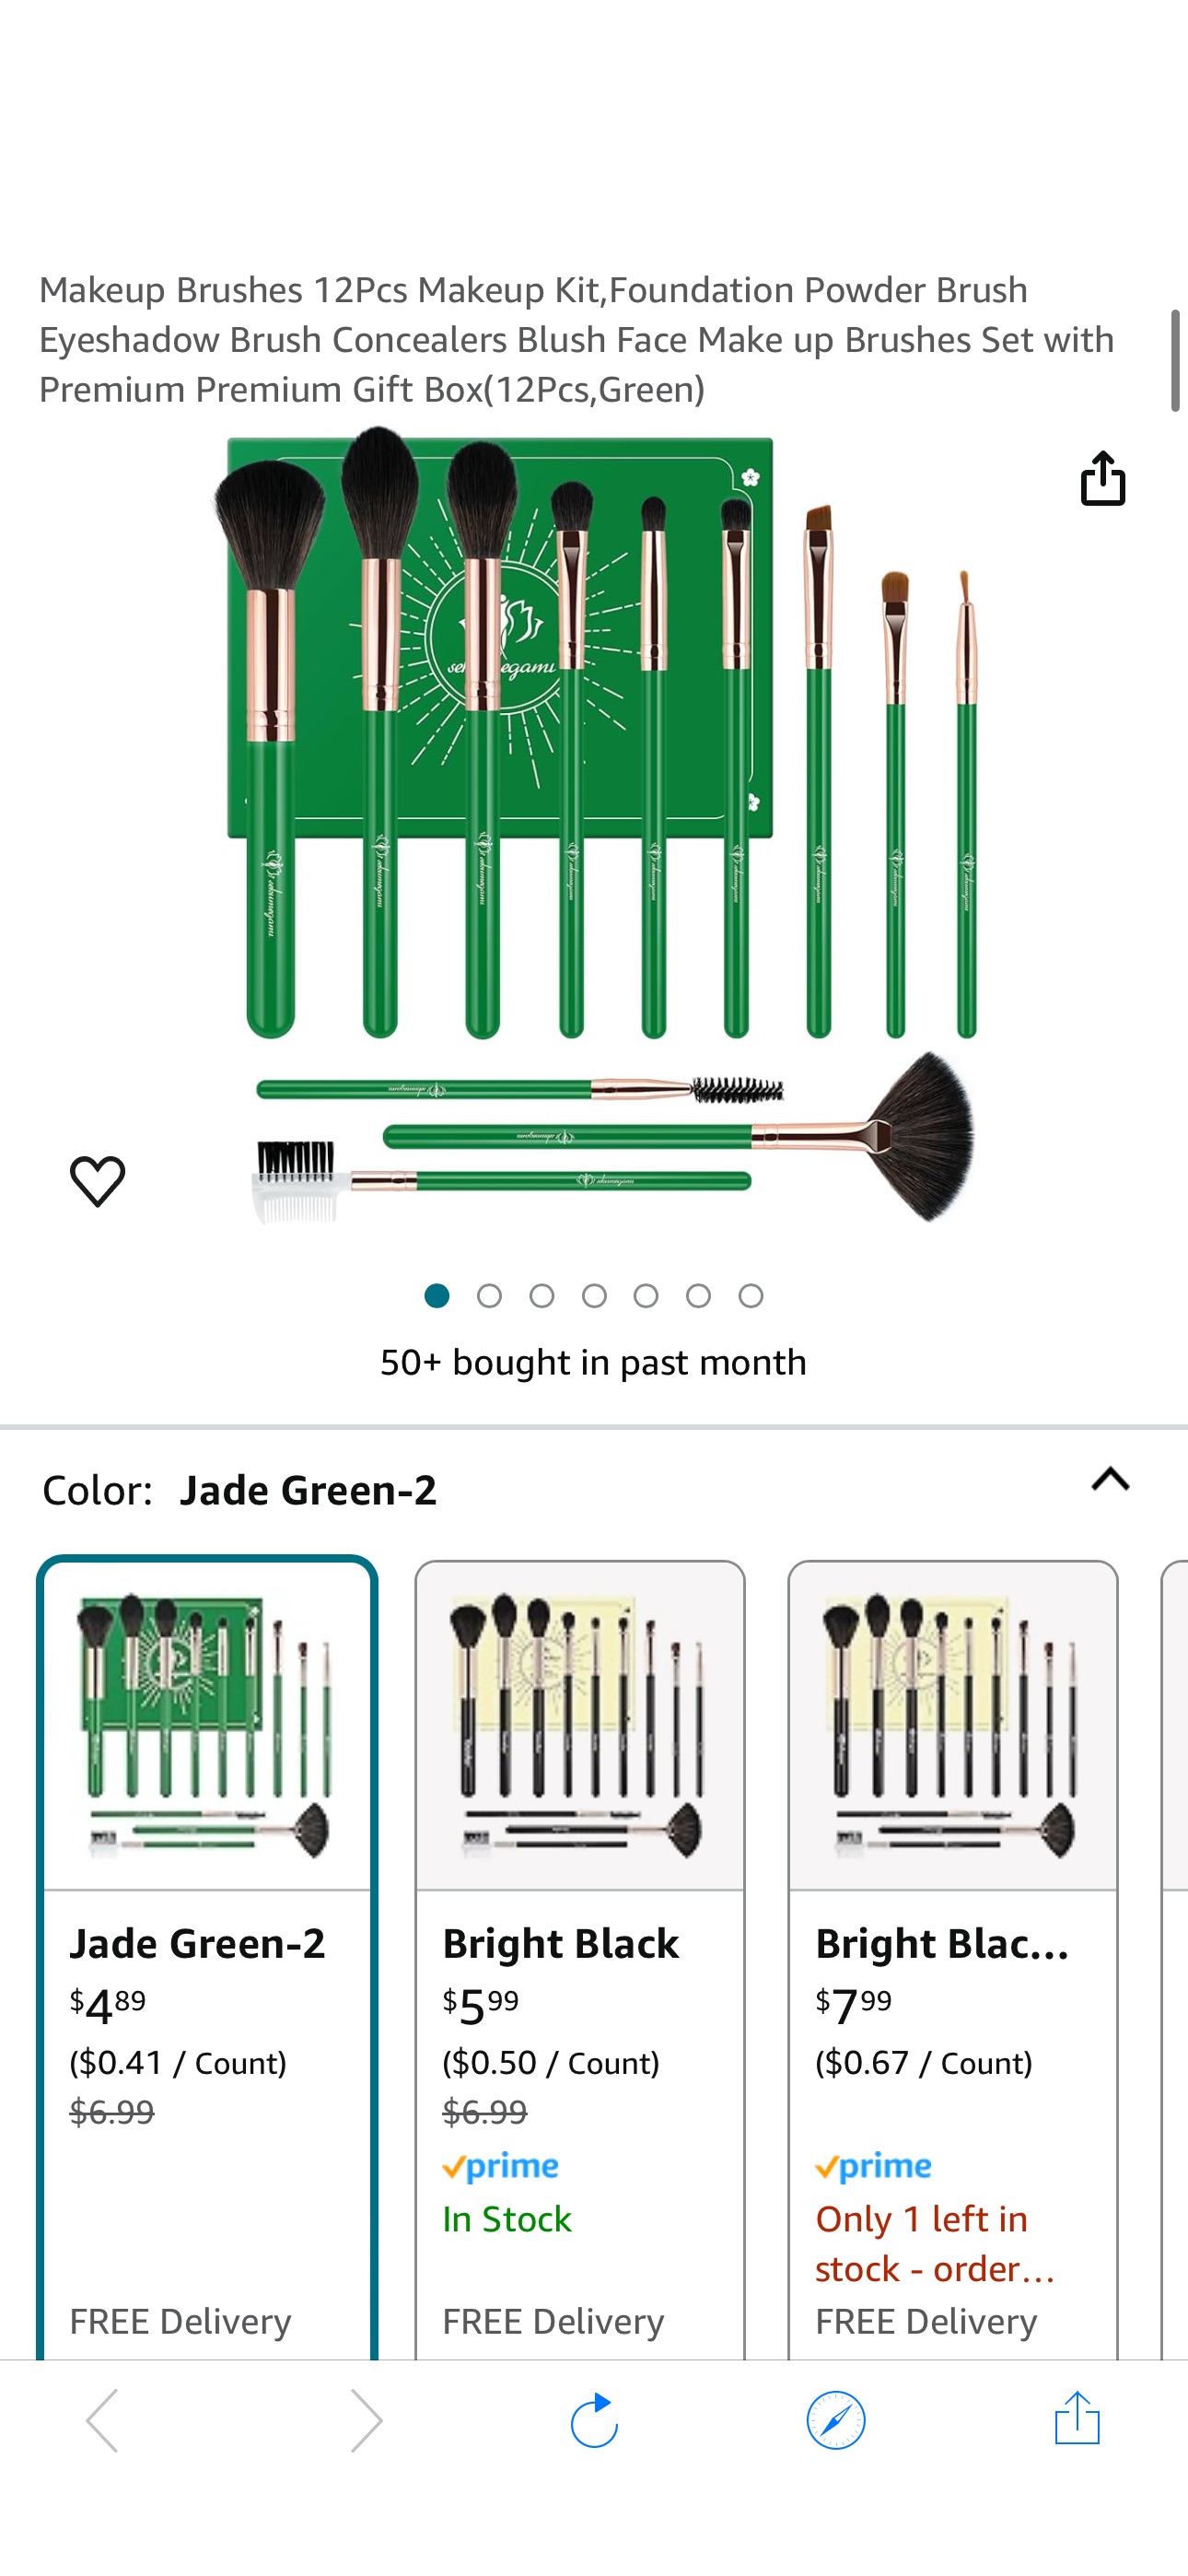 Amazon.com: Makeup Brushes 12Pcs Makeup Kit,Foundation Powder Brush Eyeshadow Brush Concealers Blush Face Make up Brushes Se
Code: 50JUYNWB